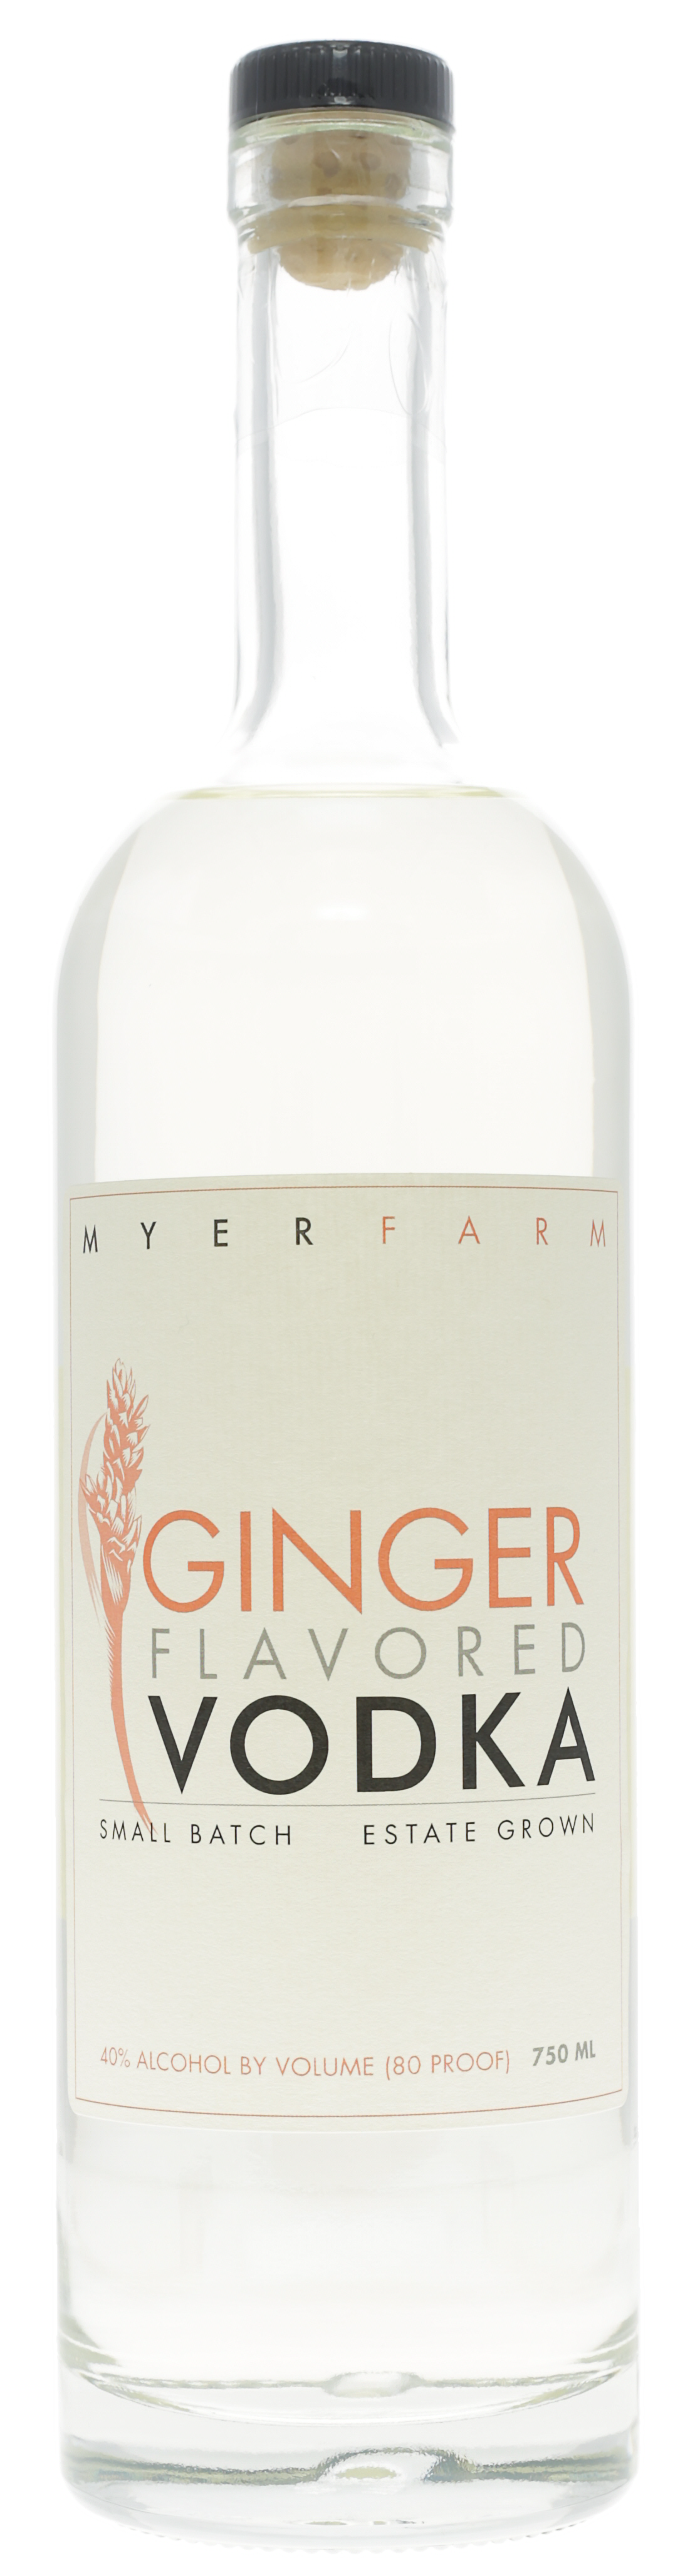 Myer Farm Ginger Vodka